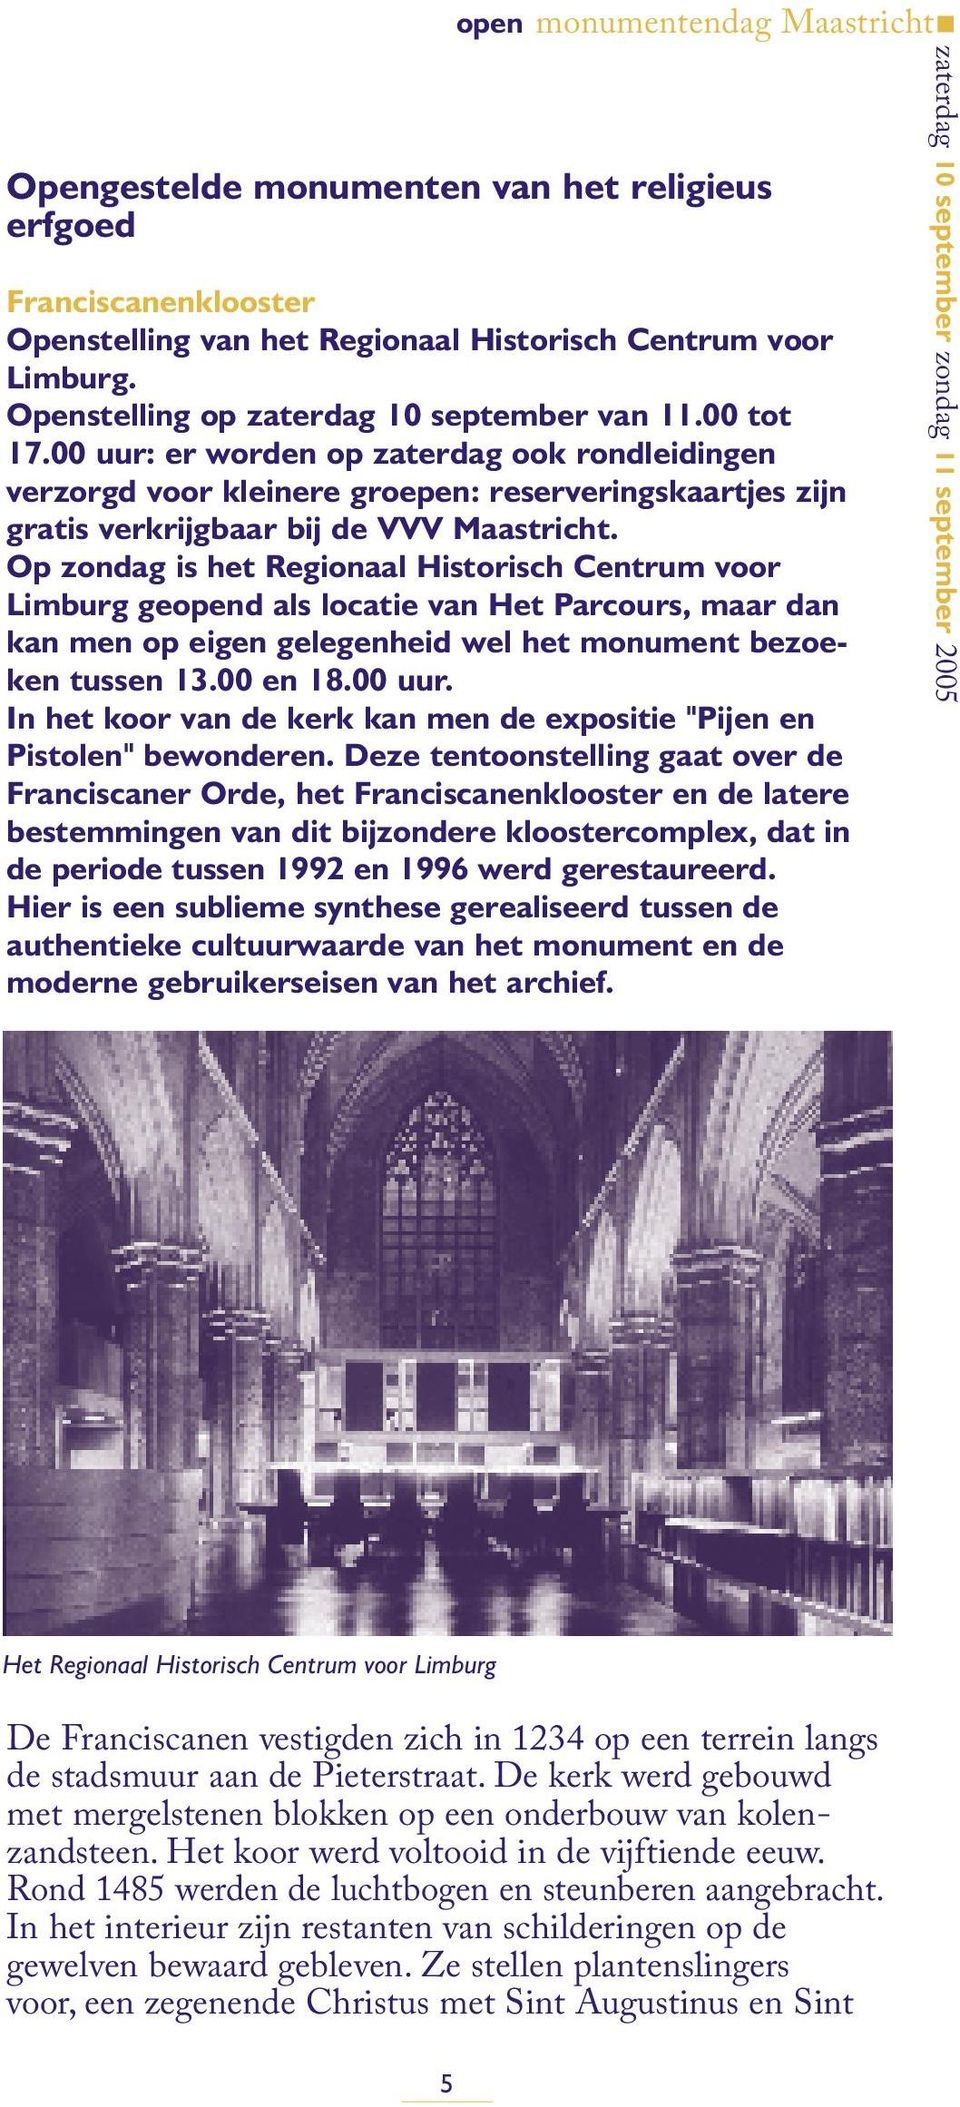 Op zondag is het Regionaal Historisch Centrum voor Limburg geopend als locatie van Het Parcours, maar dan kan men op eigen gelegenheid wel het monument bezoeken tussen 13.00 en 18.00 uur.